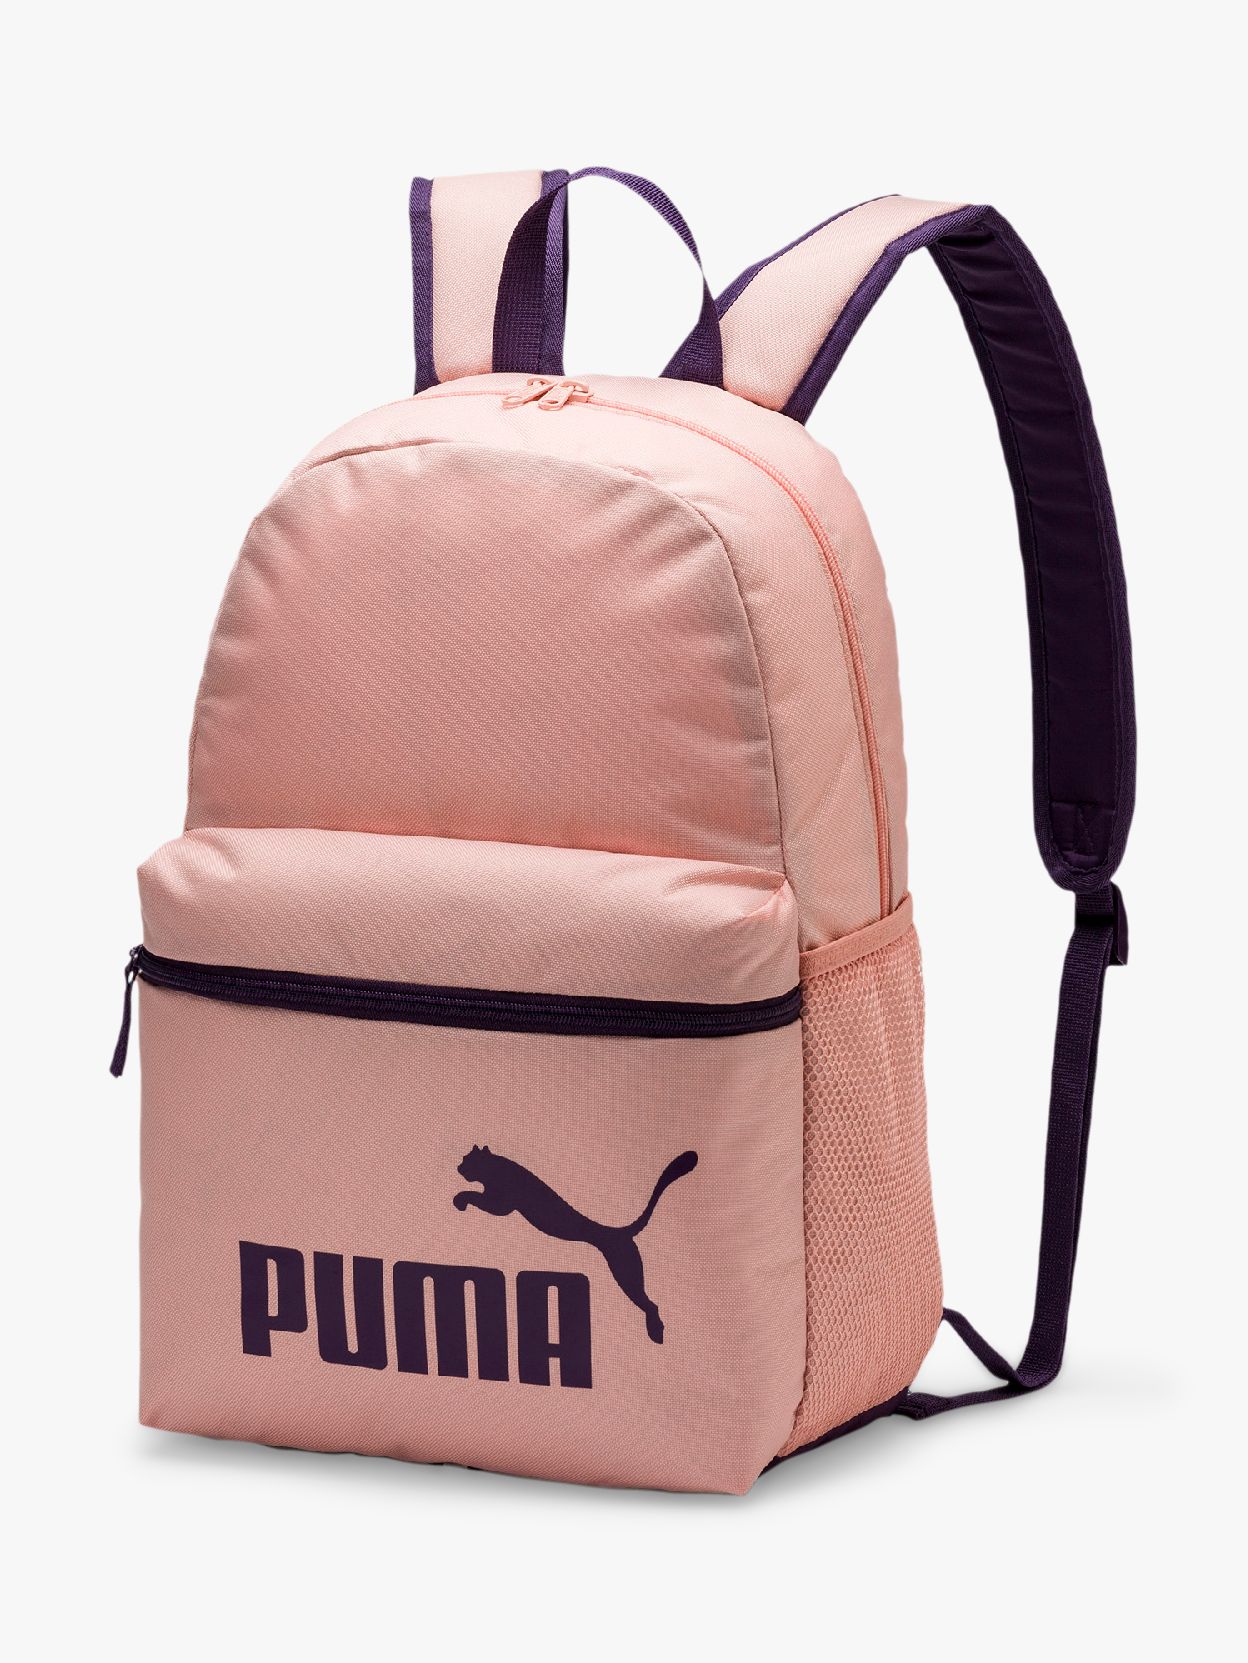 puma bags backpacks